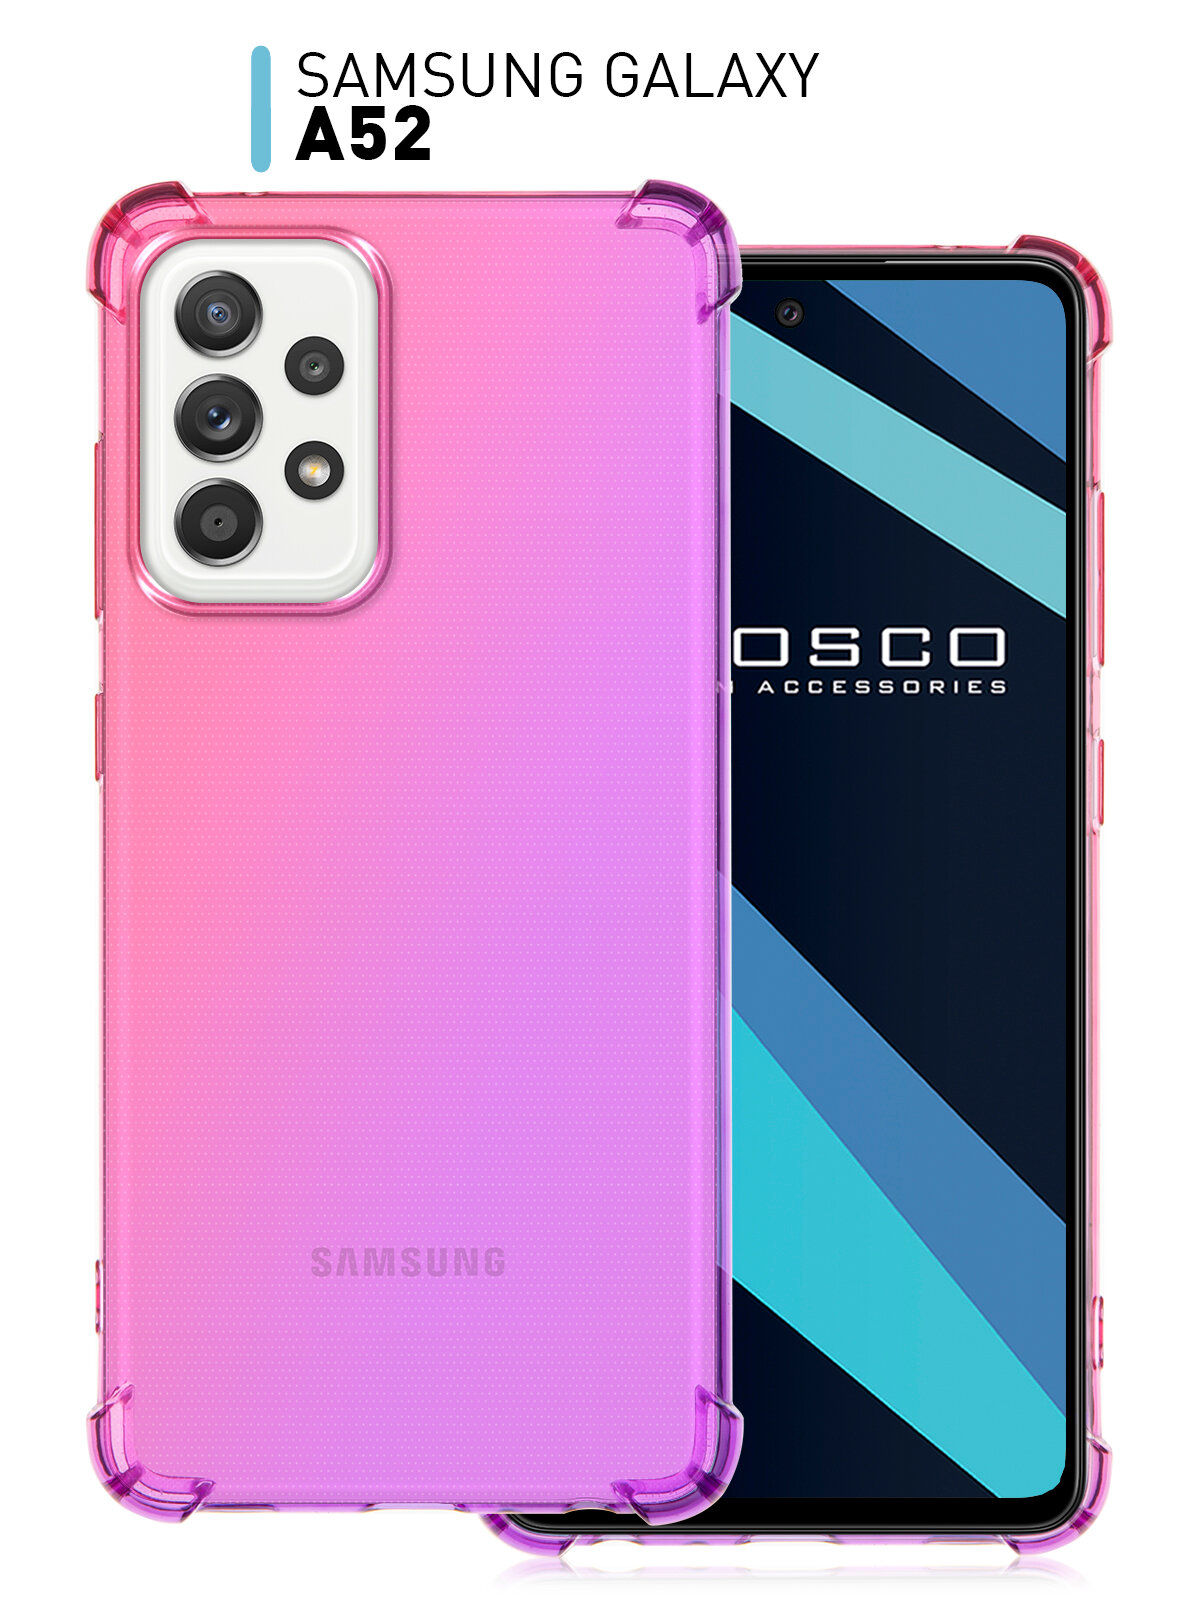 Противоударный чехол ROSCO для Samsung Galaxy A52 (Самсунг Галакси А52) усиленный с защитой модуля камер, силиконовый, прозрачный, фиолетово-розовый